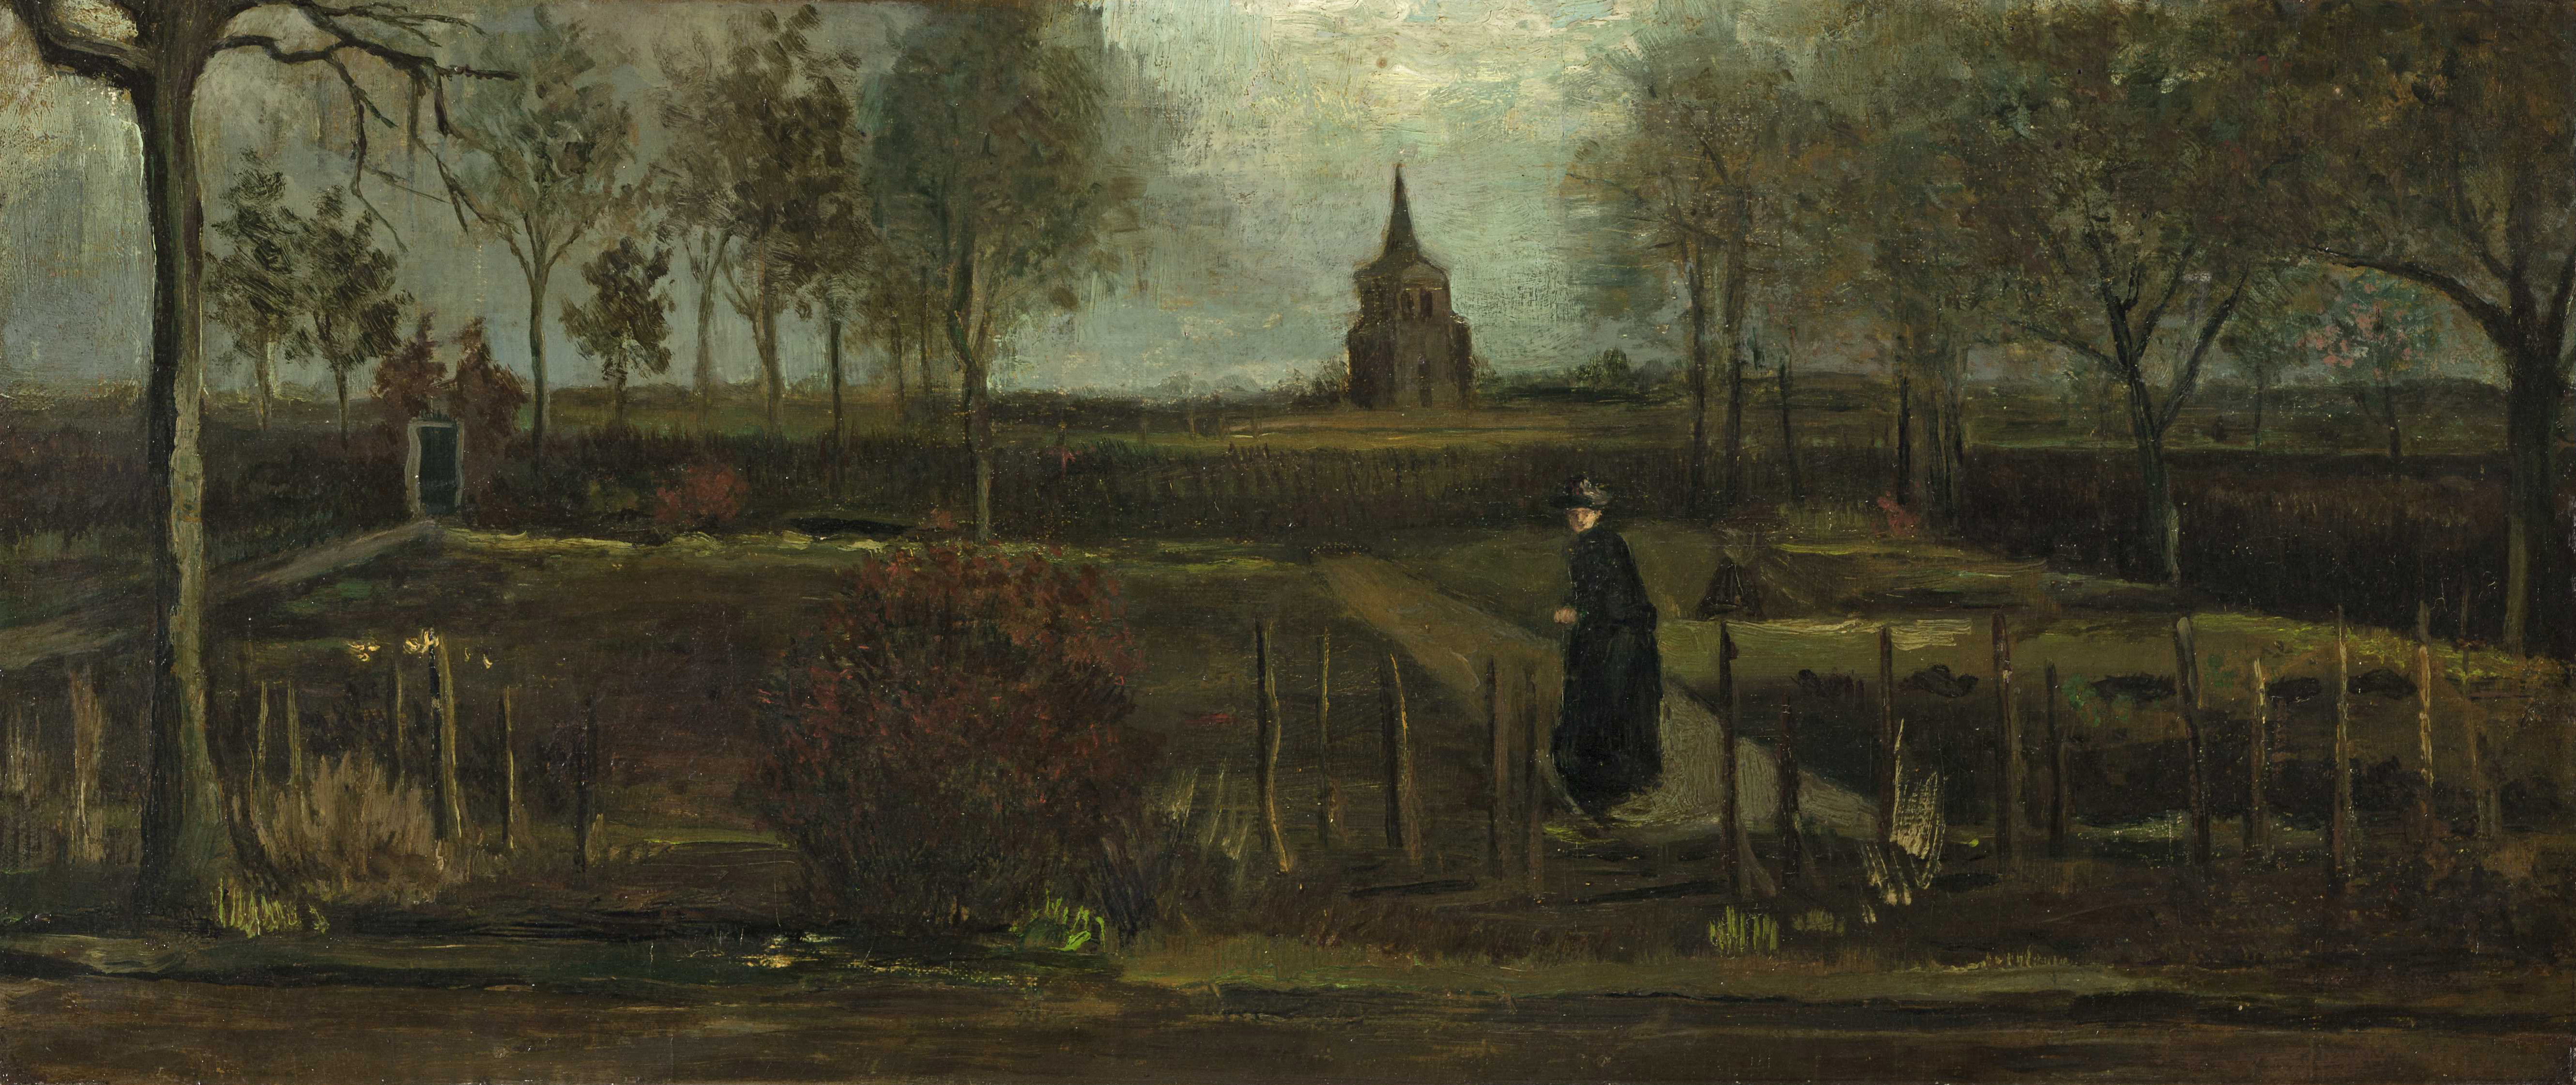 "Jardín rectoral en Nuenen en primavera", de Van Gogh (Marten de Leeuw/EPA-EFE/Shutterstock) 